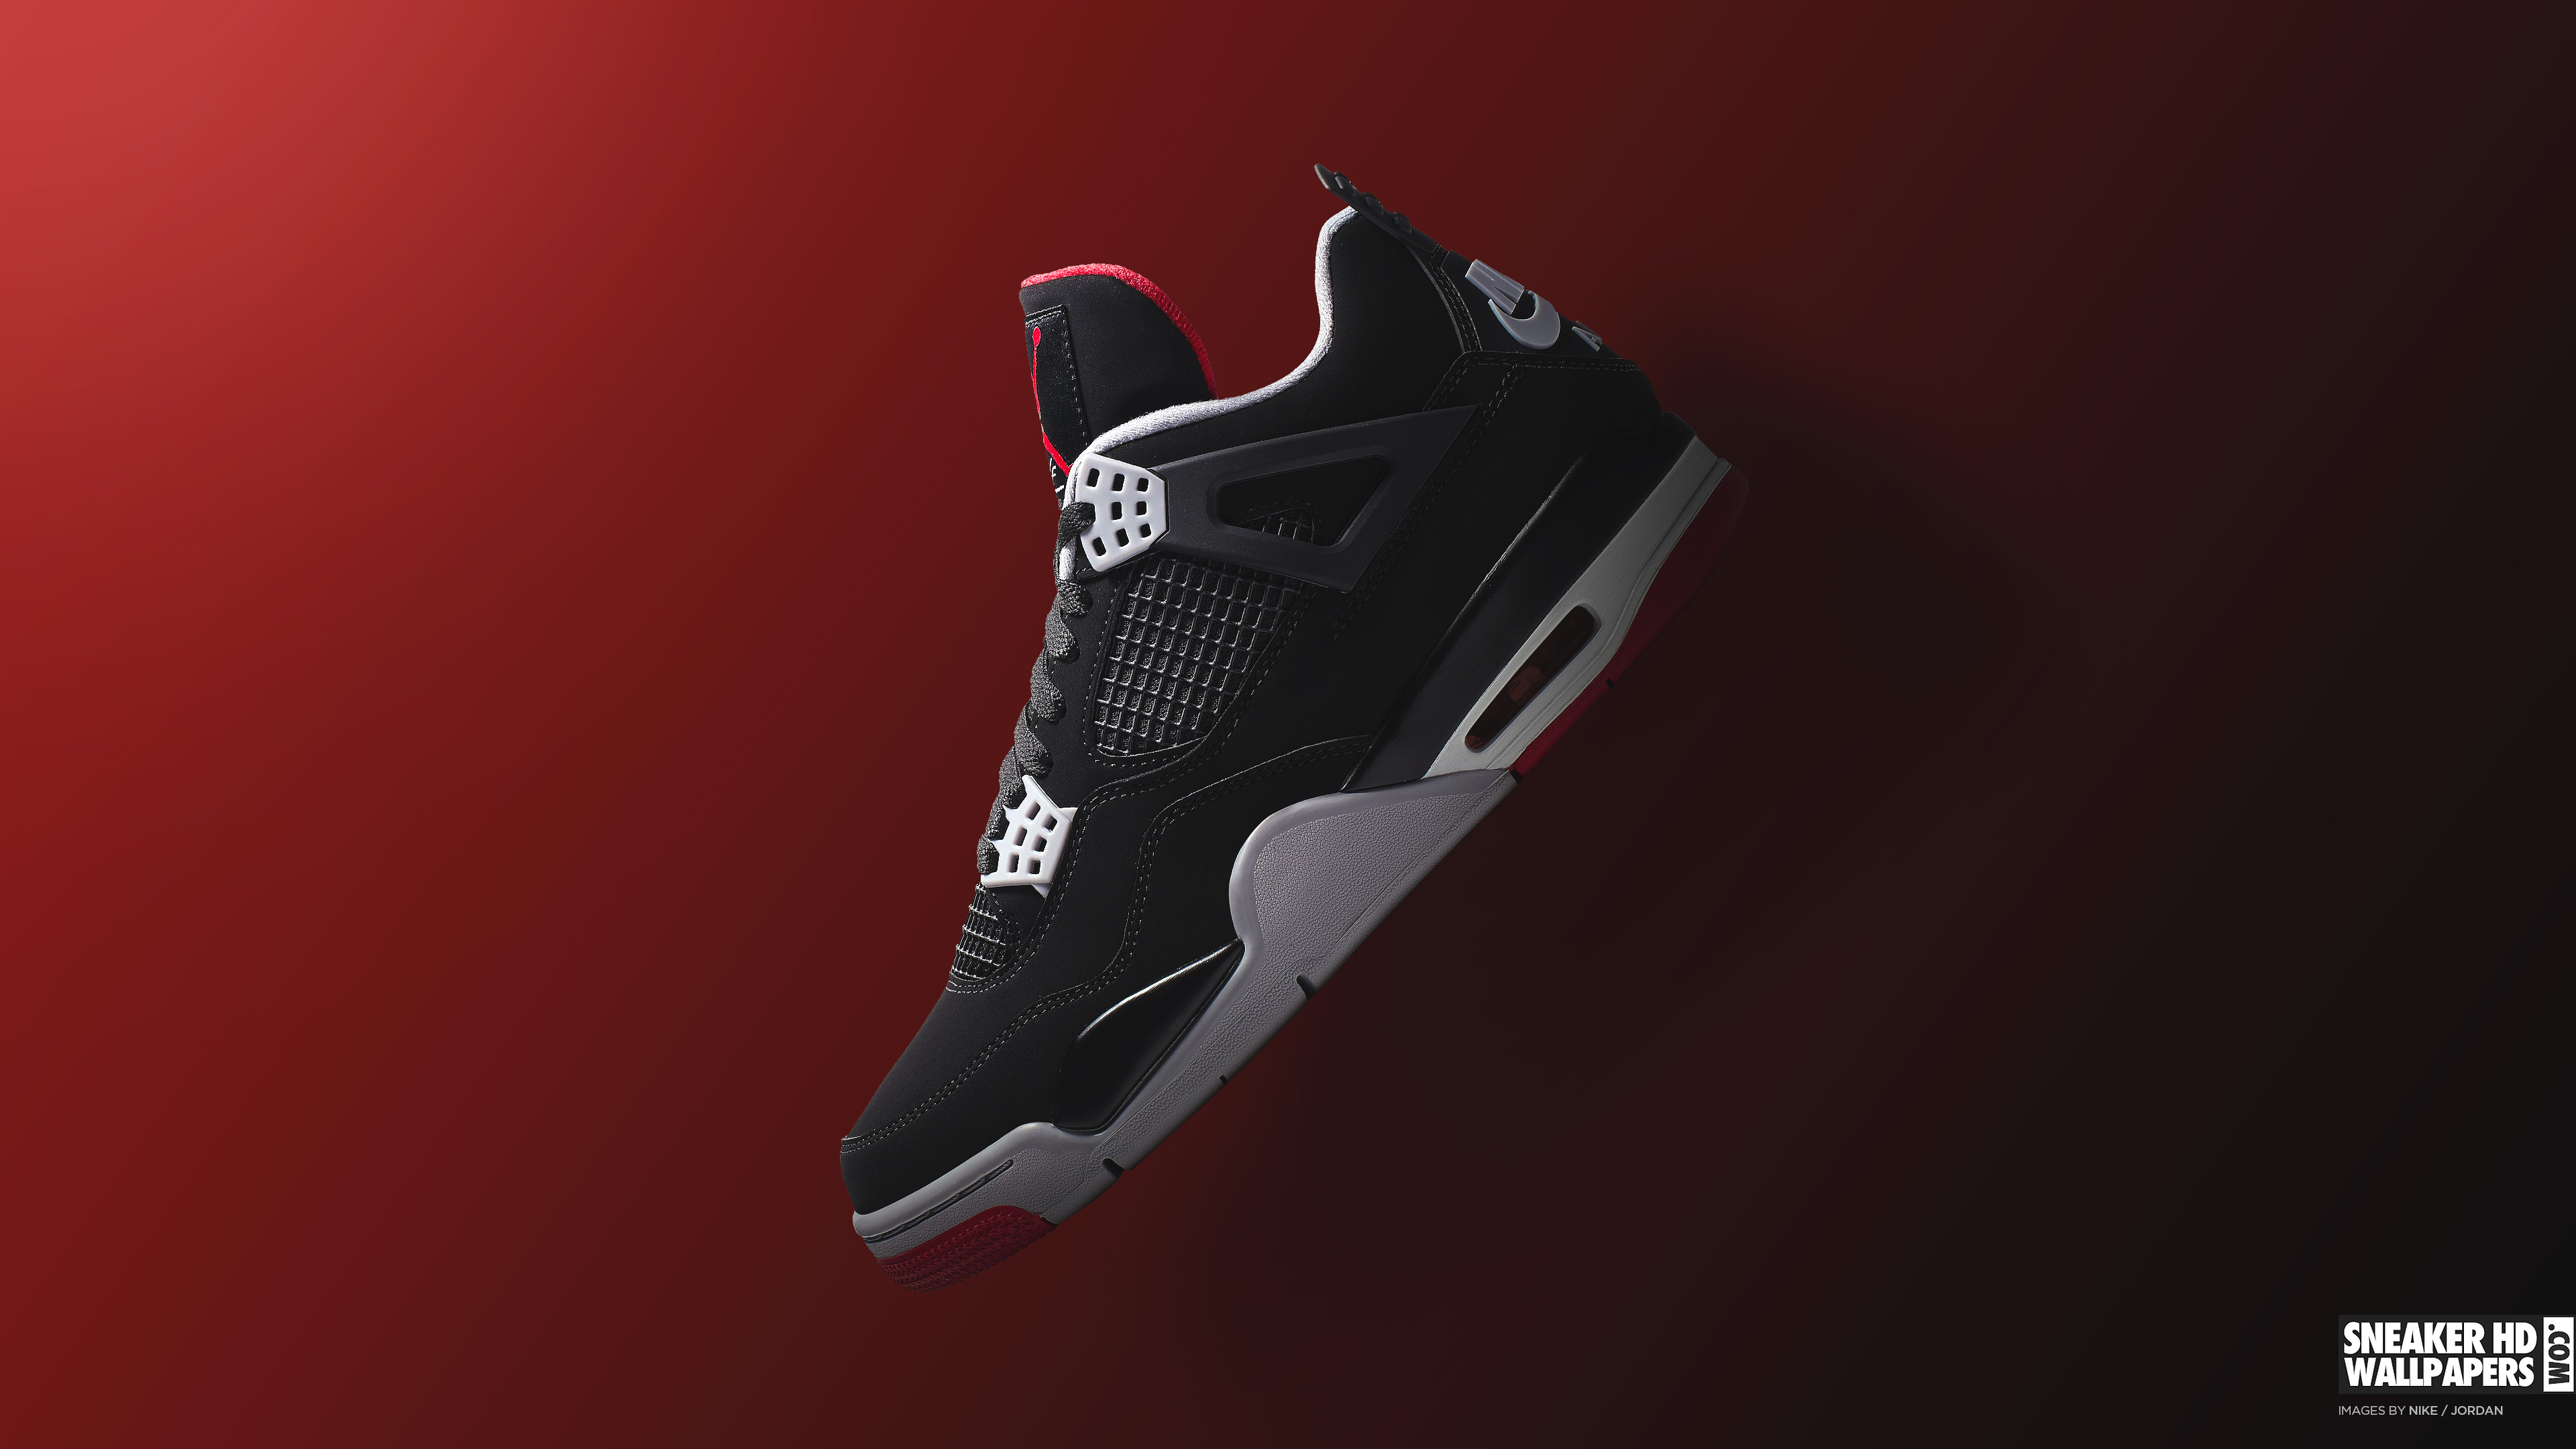 Nike Jordan Hd Wallpapers